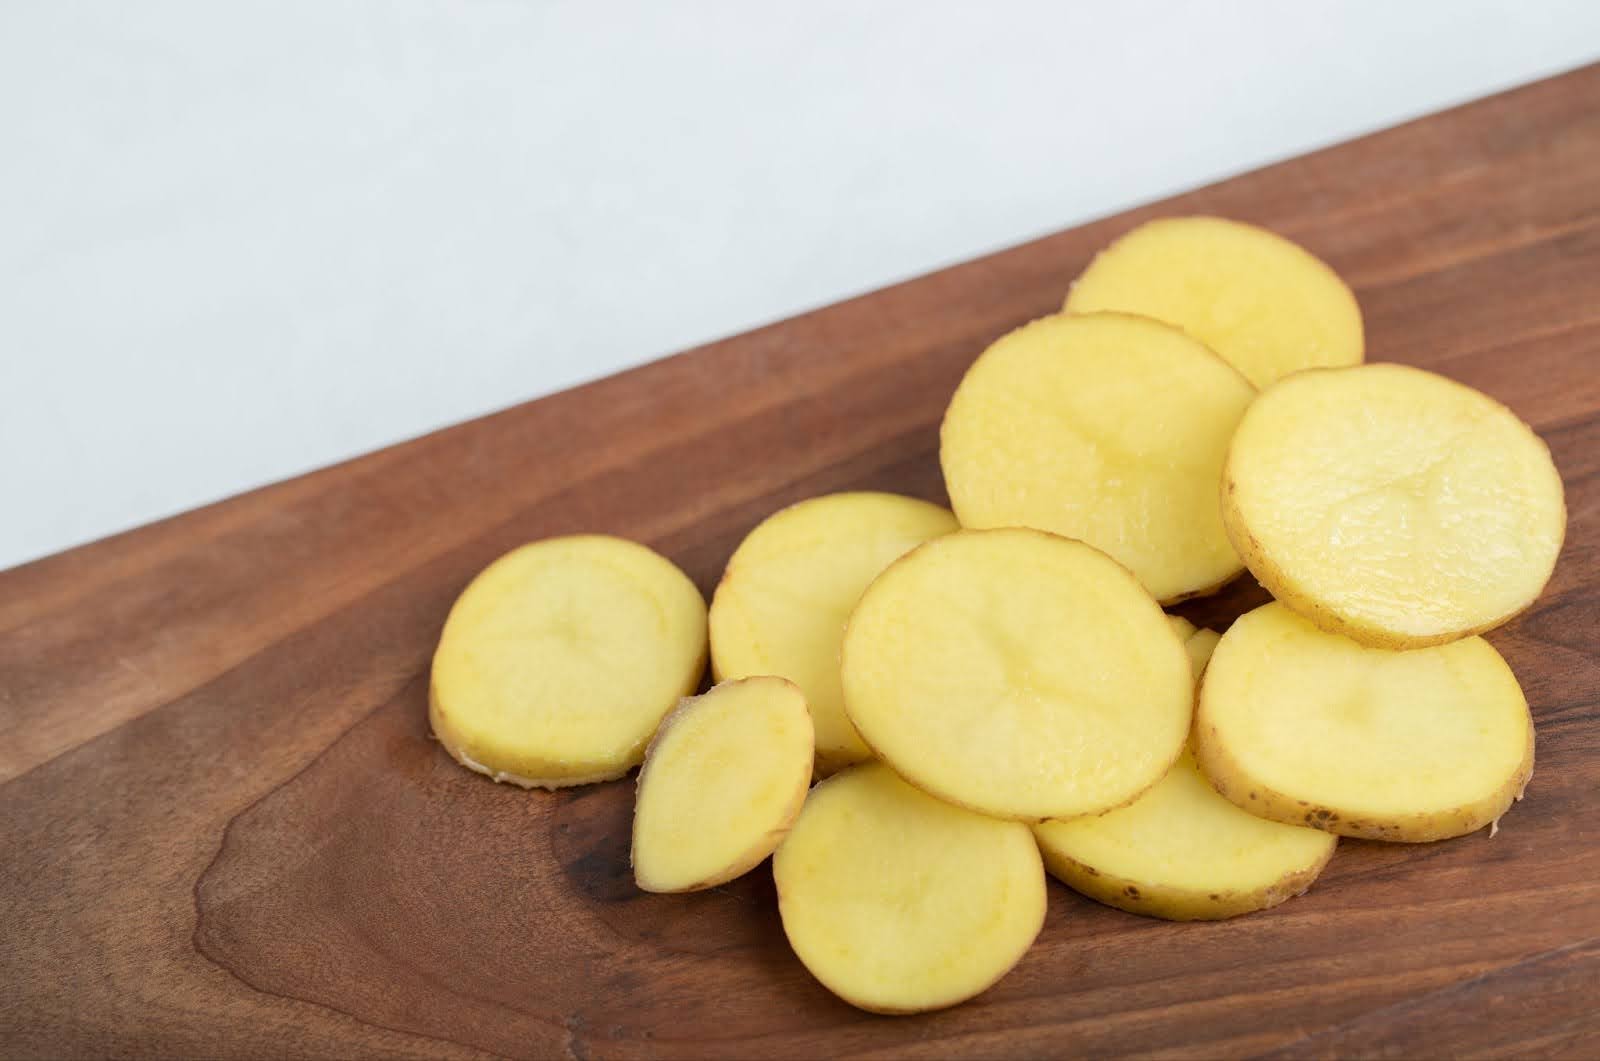 Supjaustytos bulvės su daržovių pjaustykle